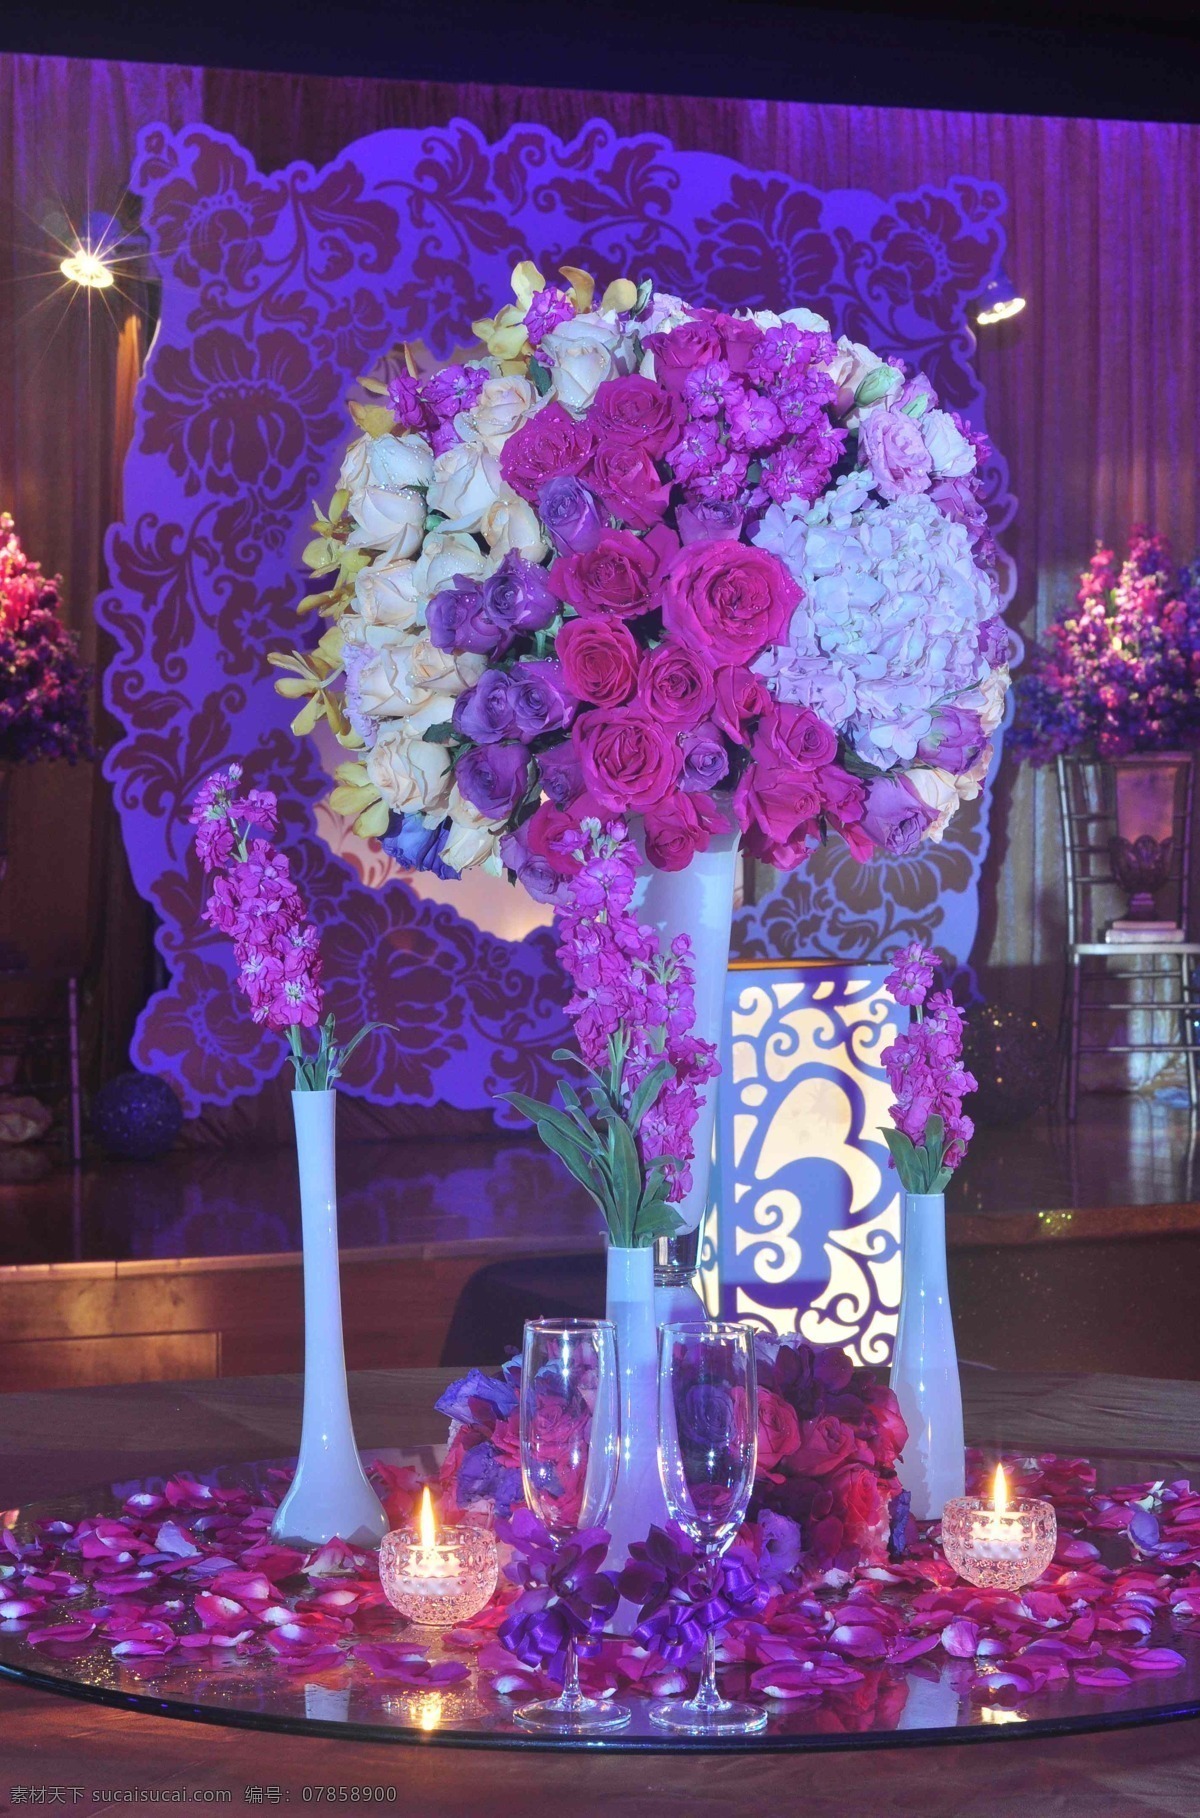 婚礼花材 鲜花 婚礼 花艺 花材 主桌花 婚礼用花 绢花 假花 仿真花 花 装饰 文化艺术 节日庆祝 紫色